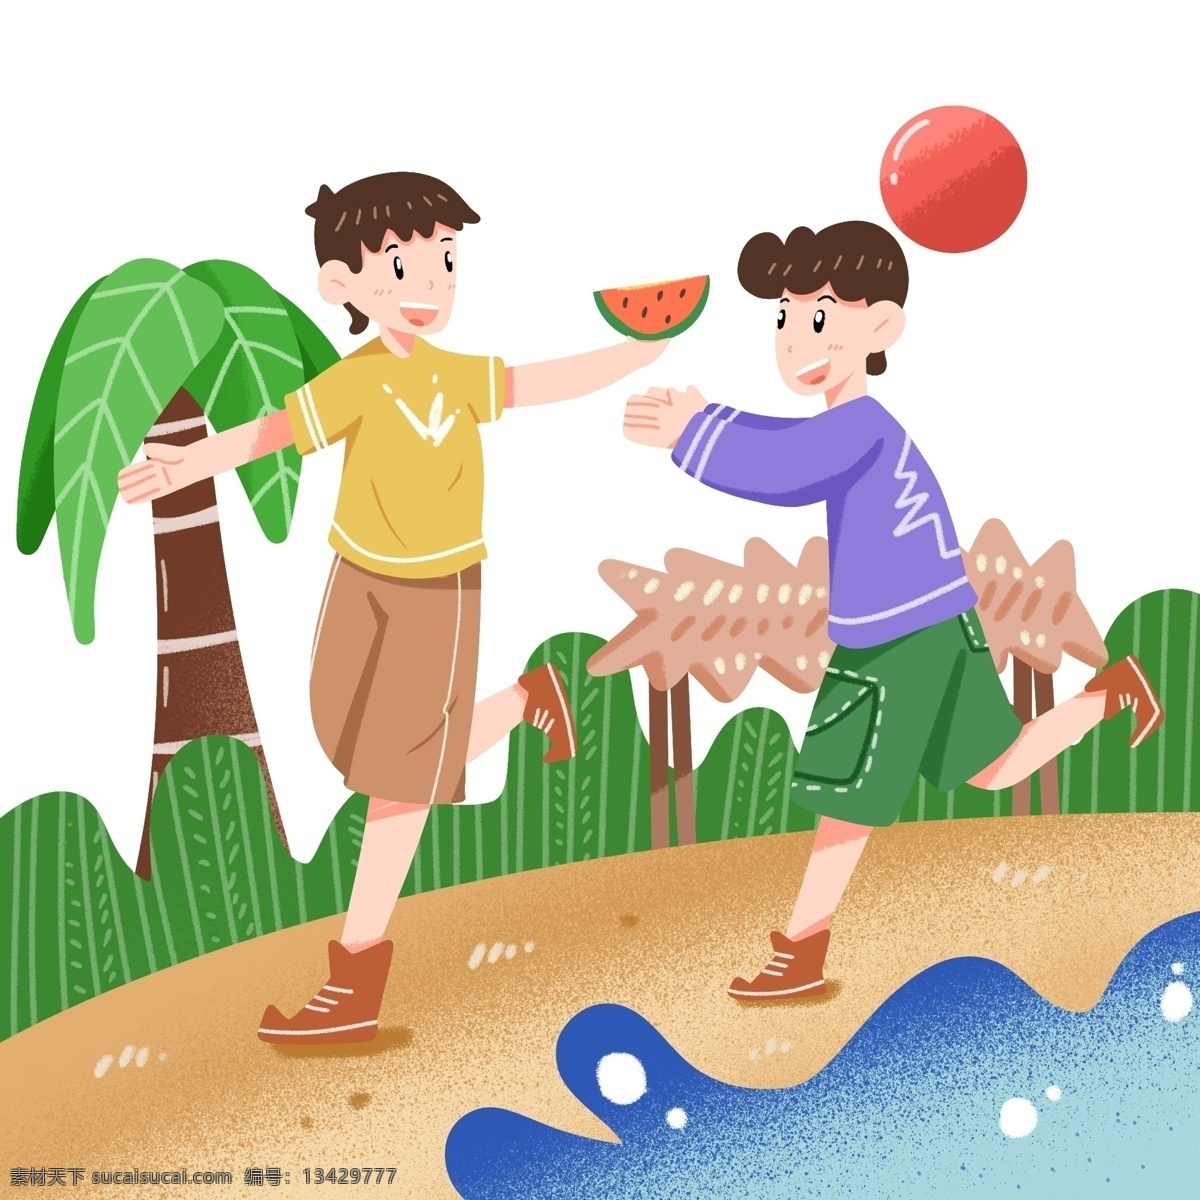 夏季 小伙伴 争抢 西瓜 可爱 在外 土地 玩耍